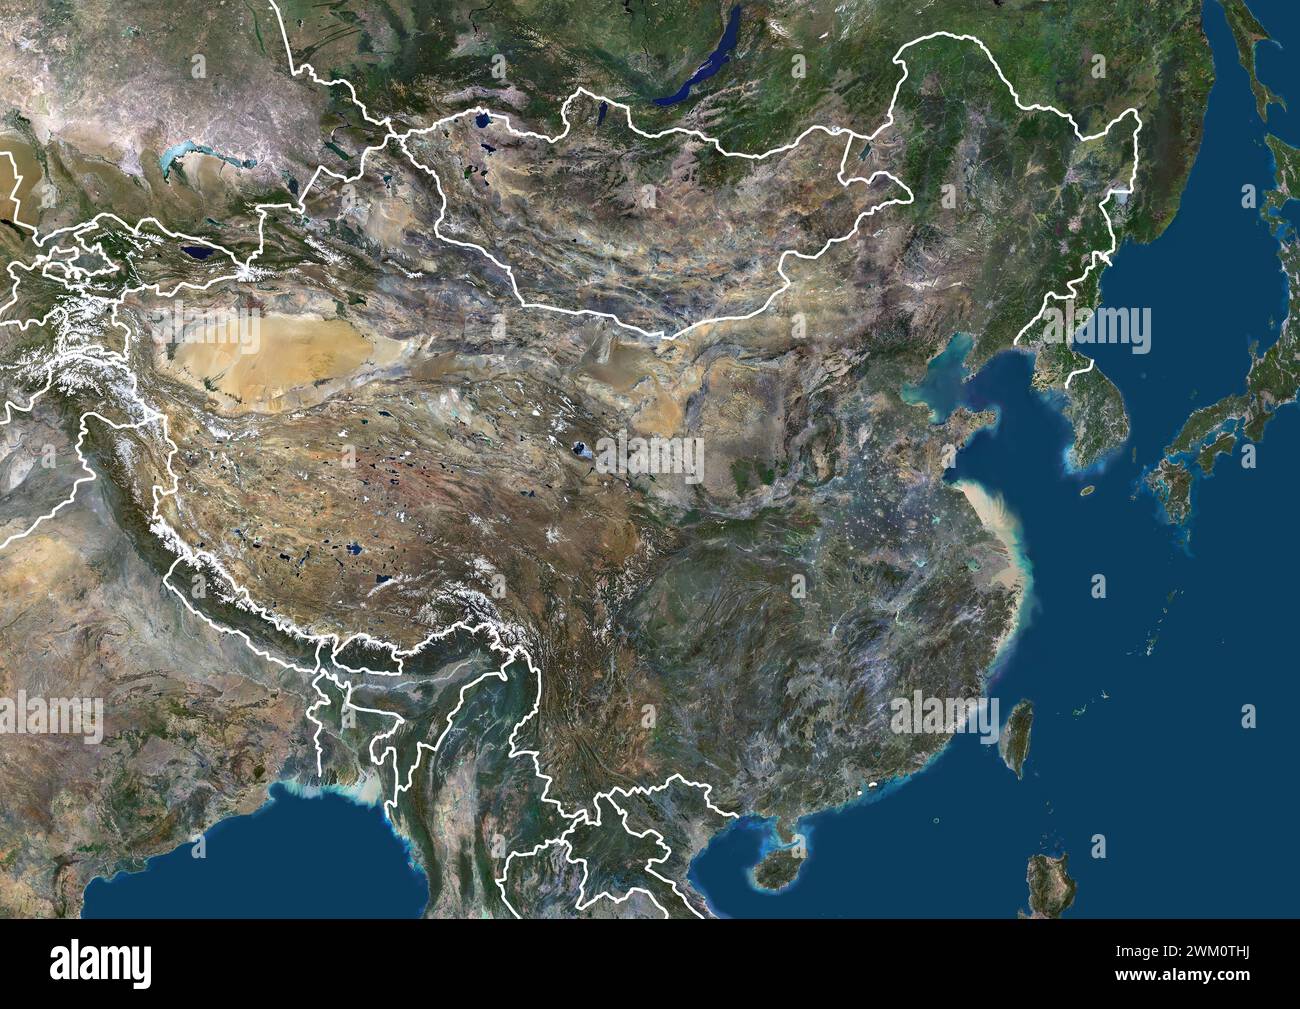 Immagine satellitare a colori dell'Asia orientale con la Cina al centro, con i confini. Foto Stock